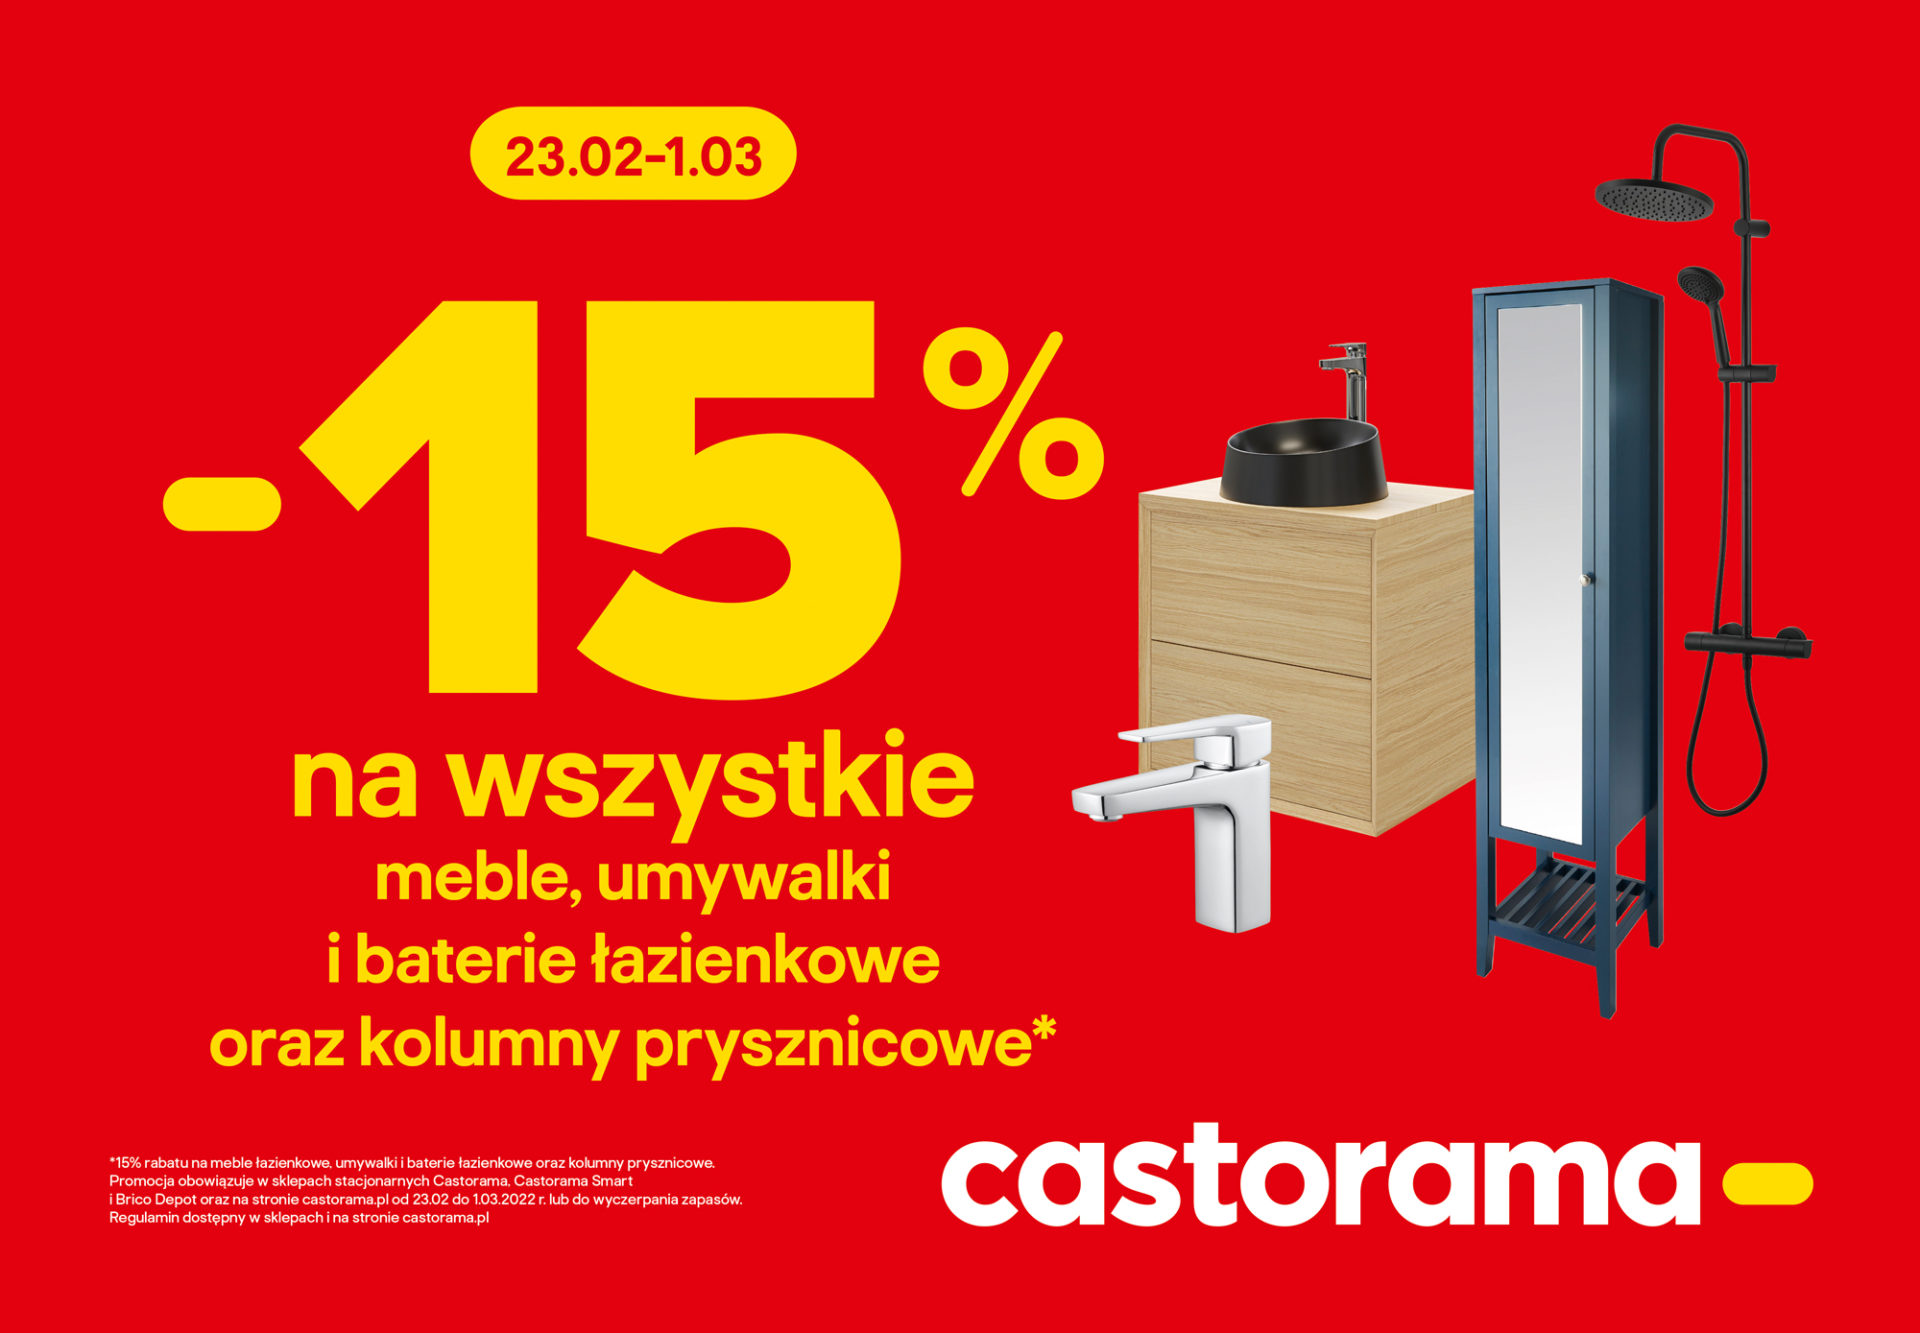 -15% na art. łazienkowe Castorama Pabianice, -15% na artykuły łazienkowe w Castoramie